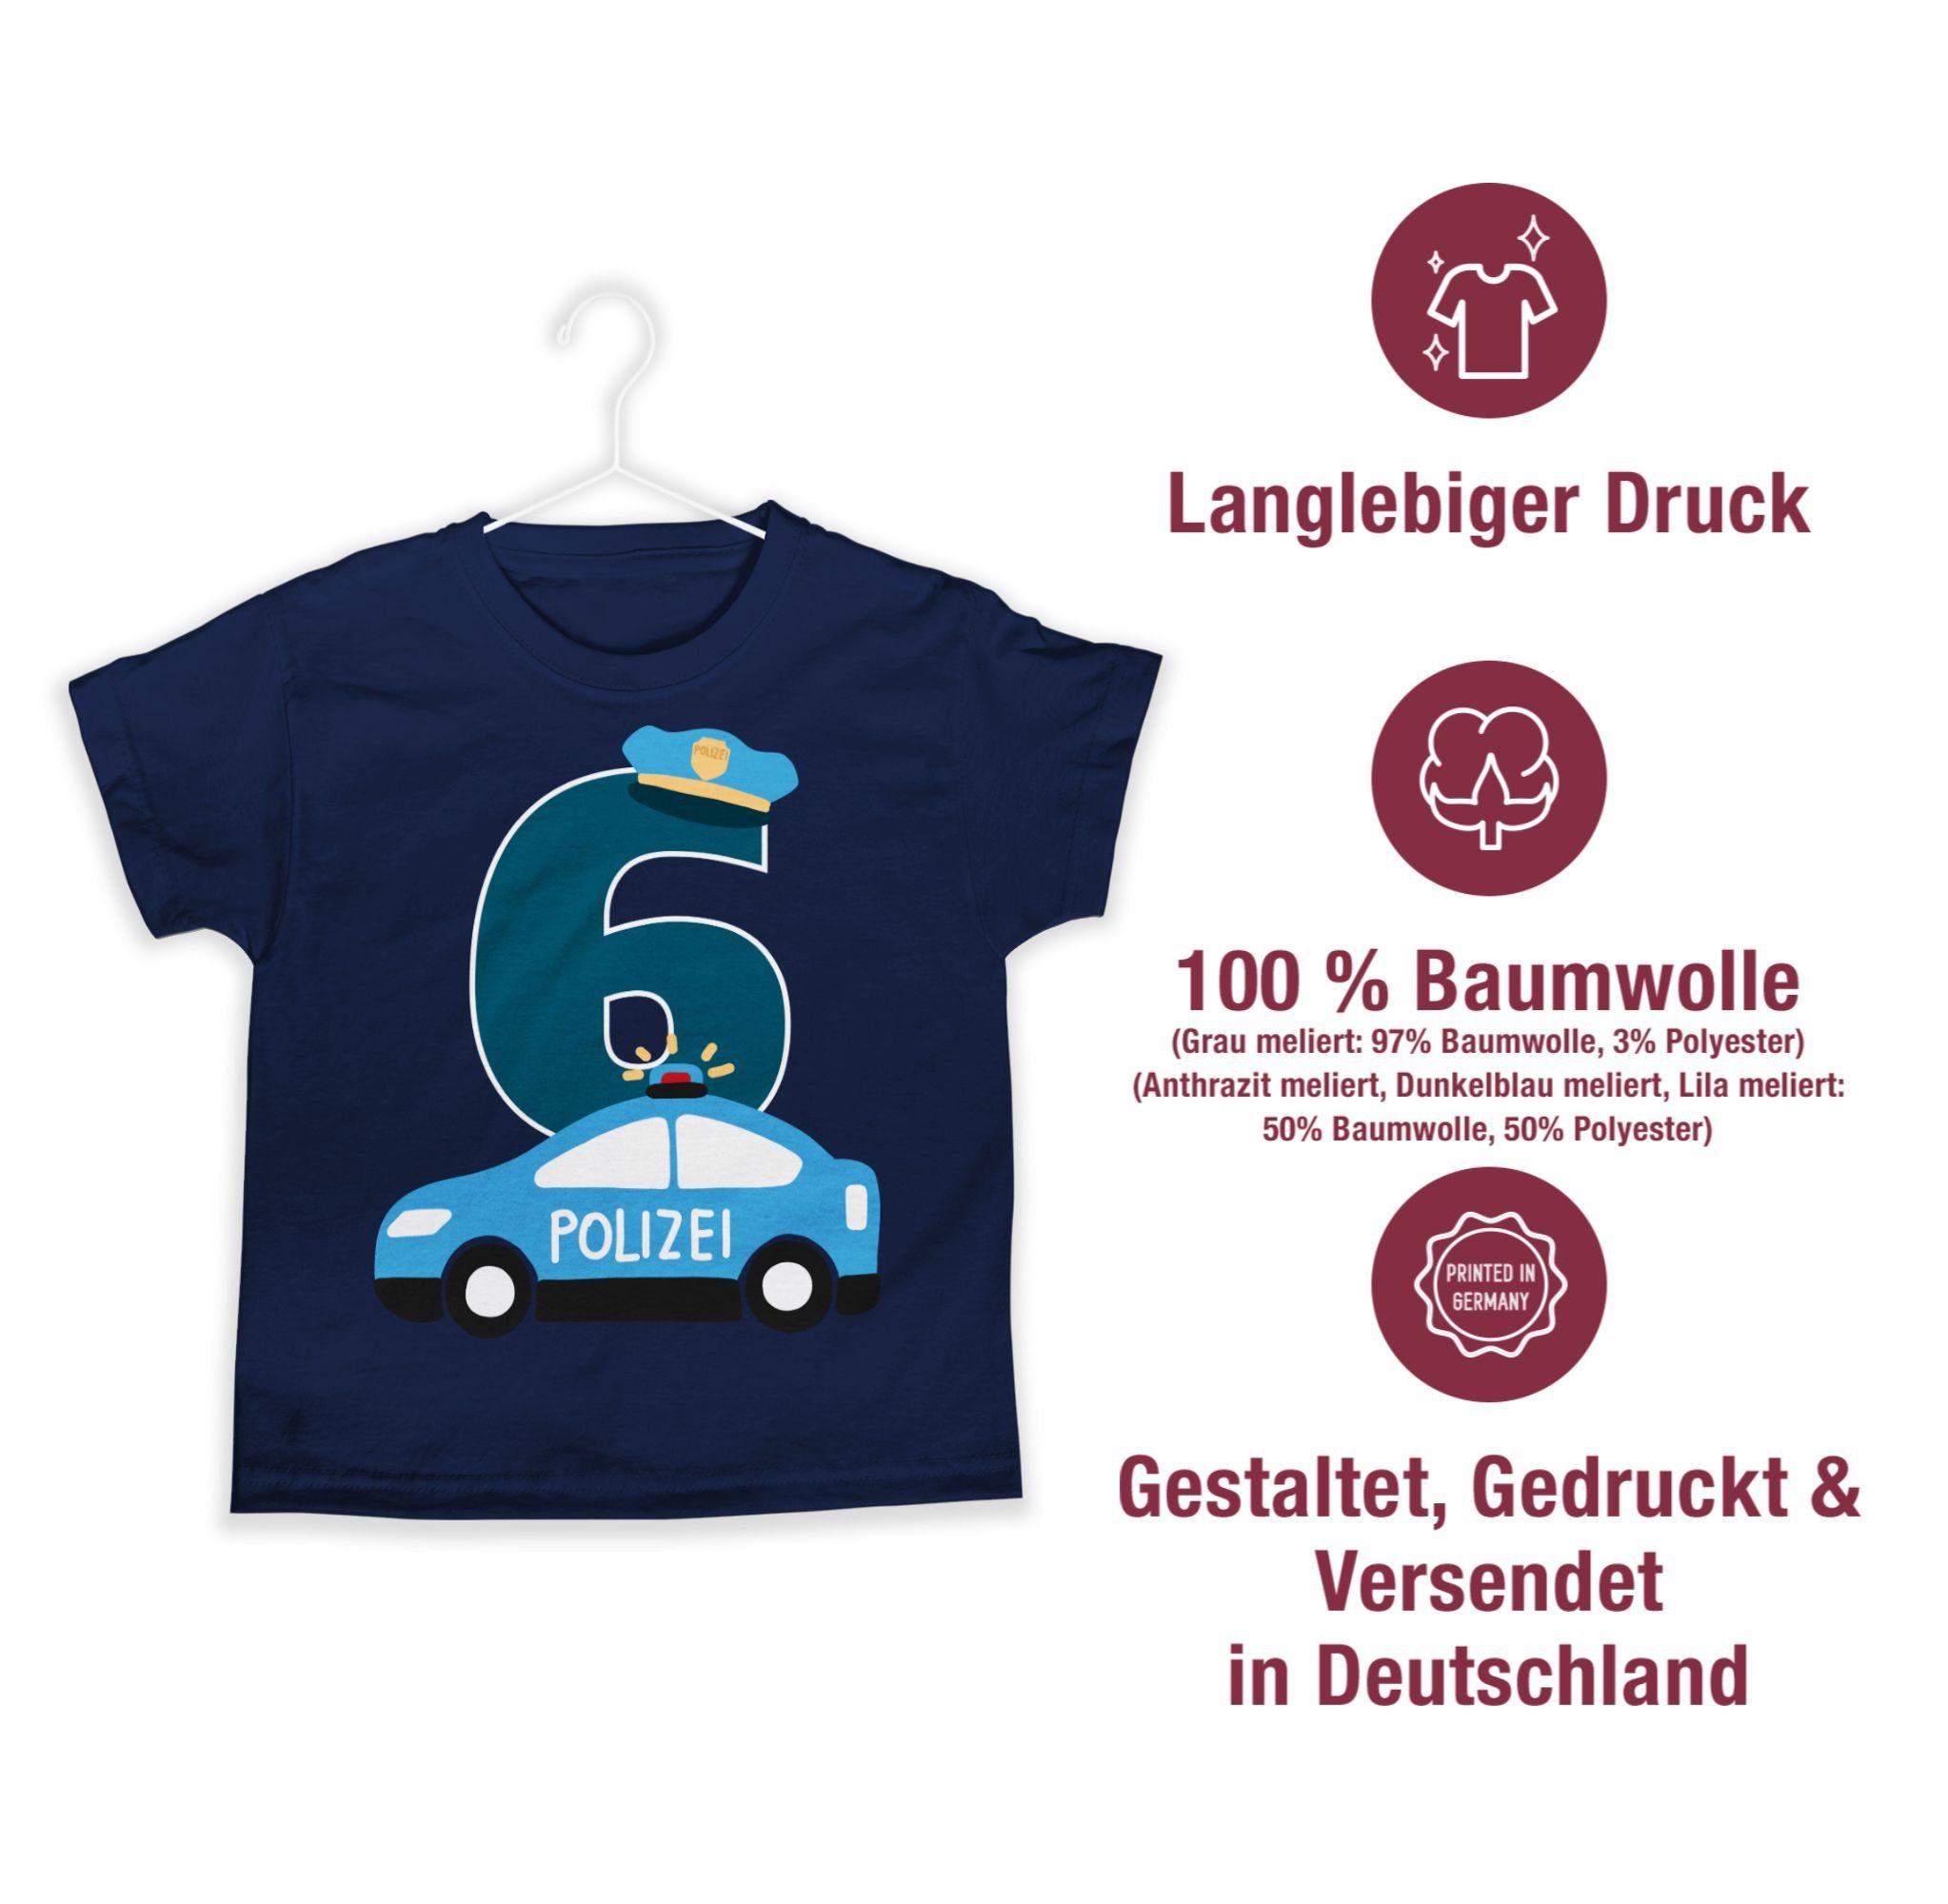 Shirtracer T-Shirt Polizei Sechster Geburtstag Dunkelblau 1 6